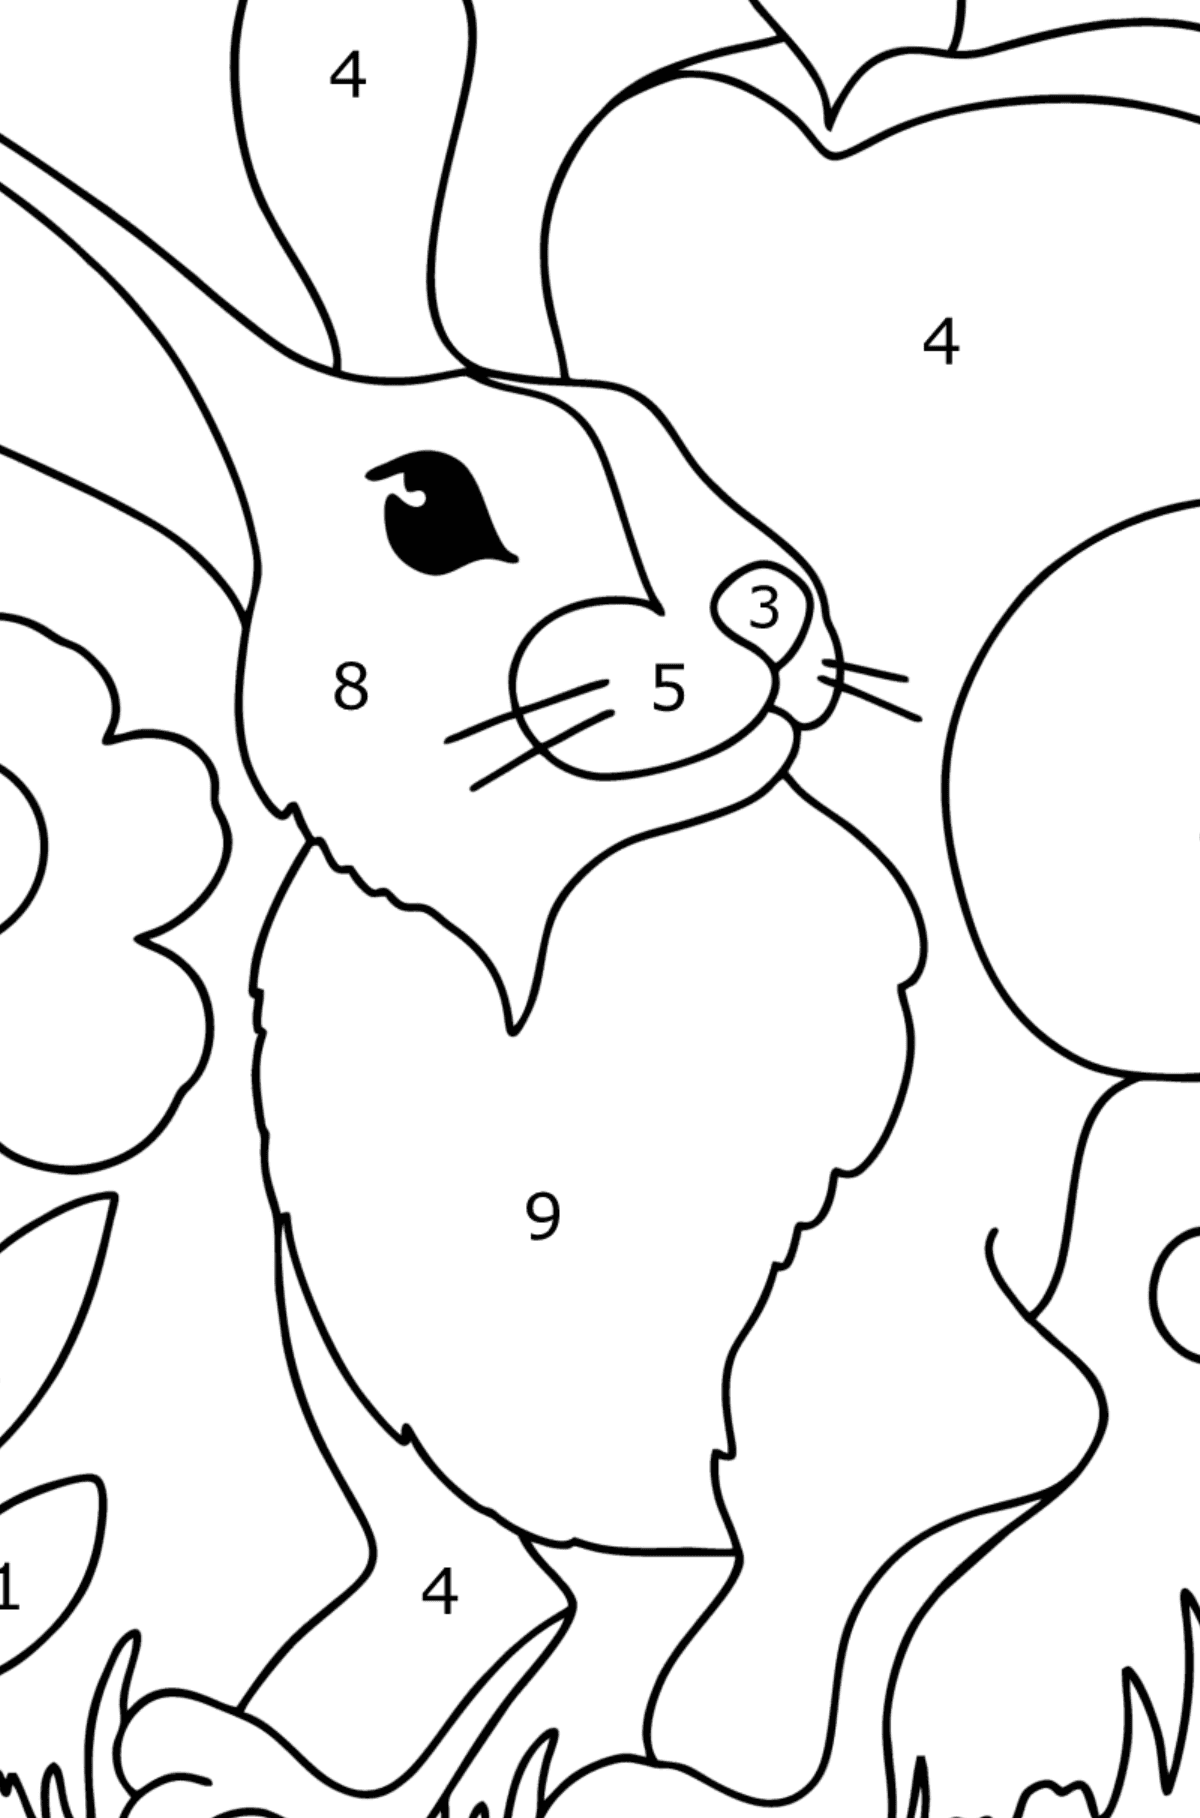 Ausmalbild: Süßes Kaninchen - Malen nach Zahlen für Kinder